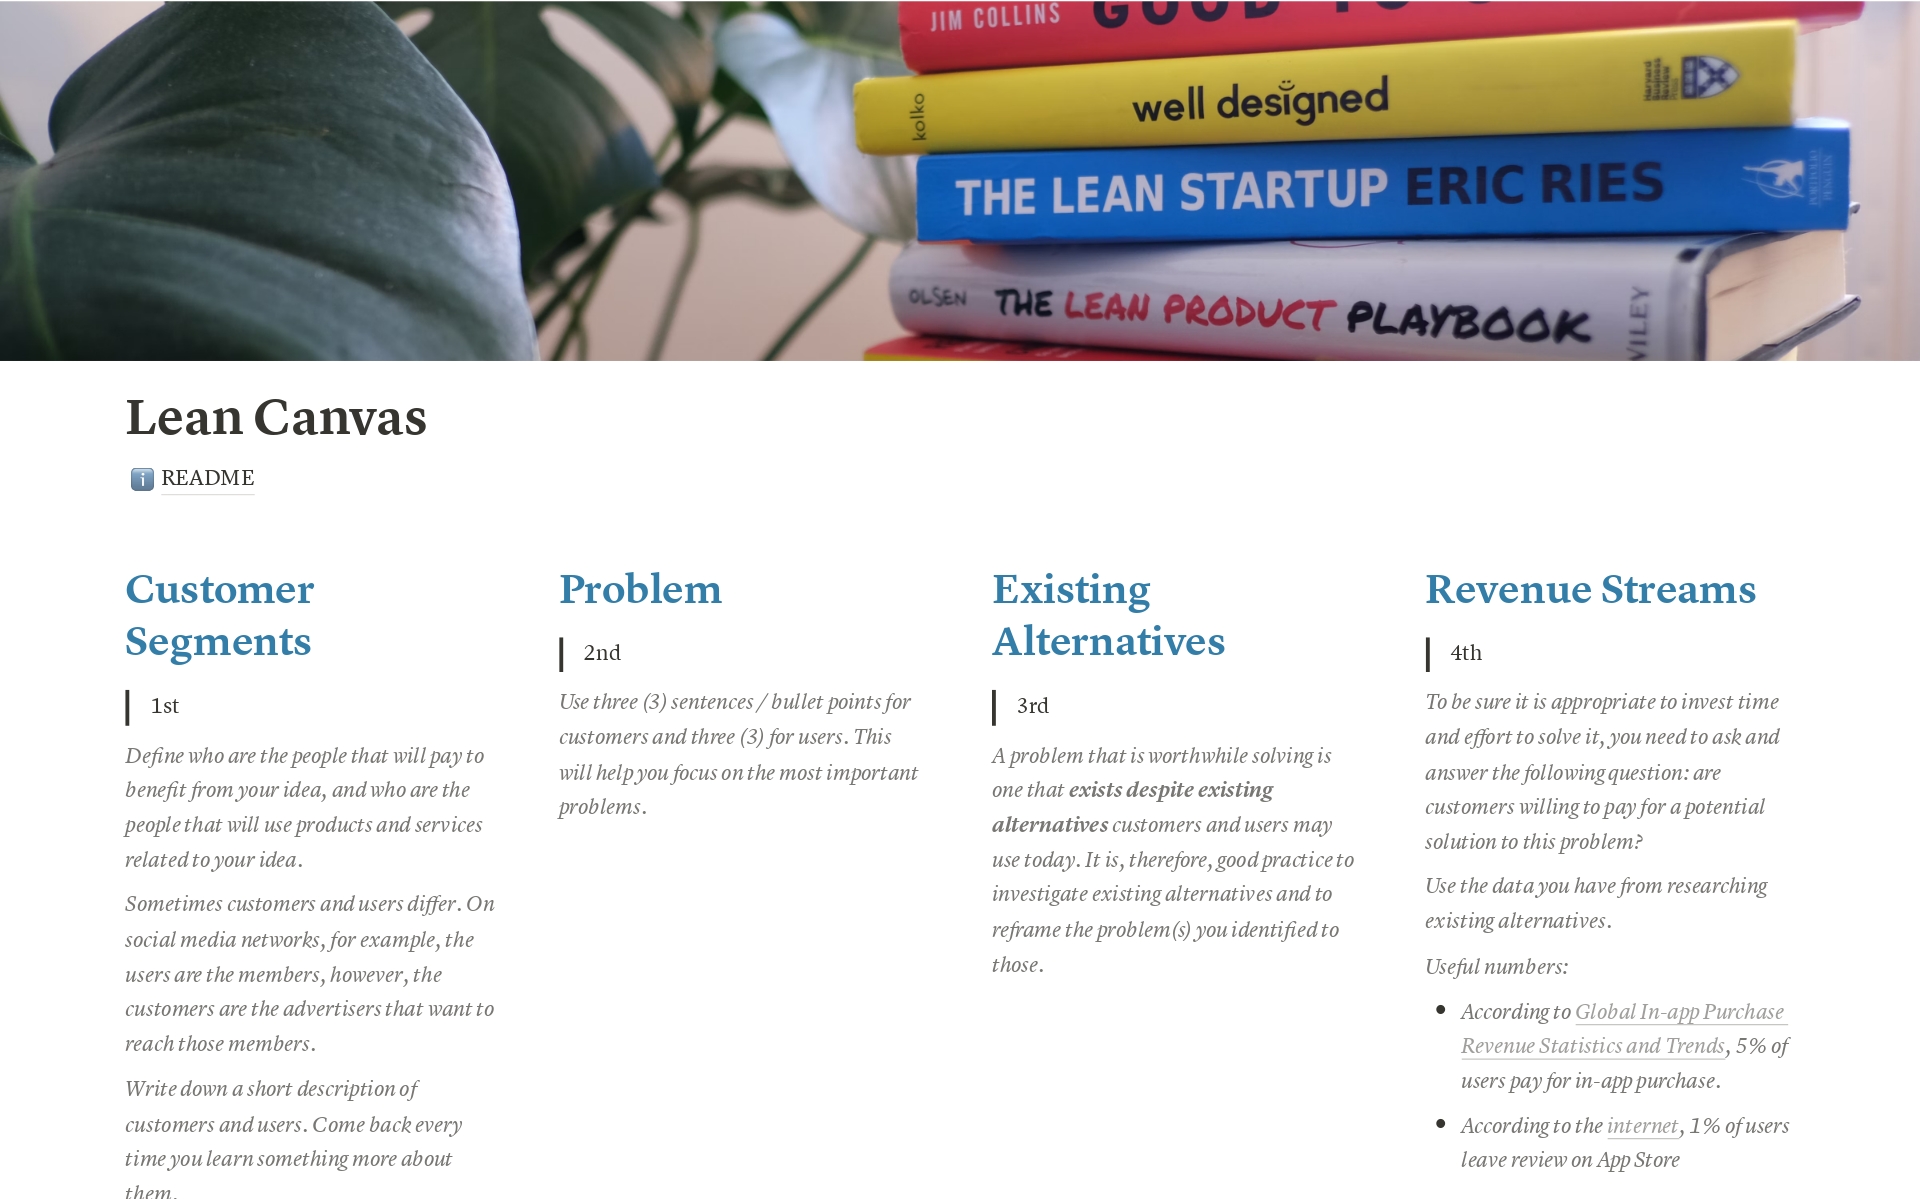 Vista previa de una plantilla para Lean Canvas - from The Lean Startup